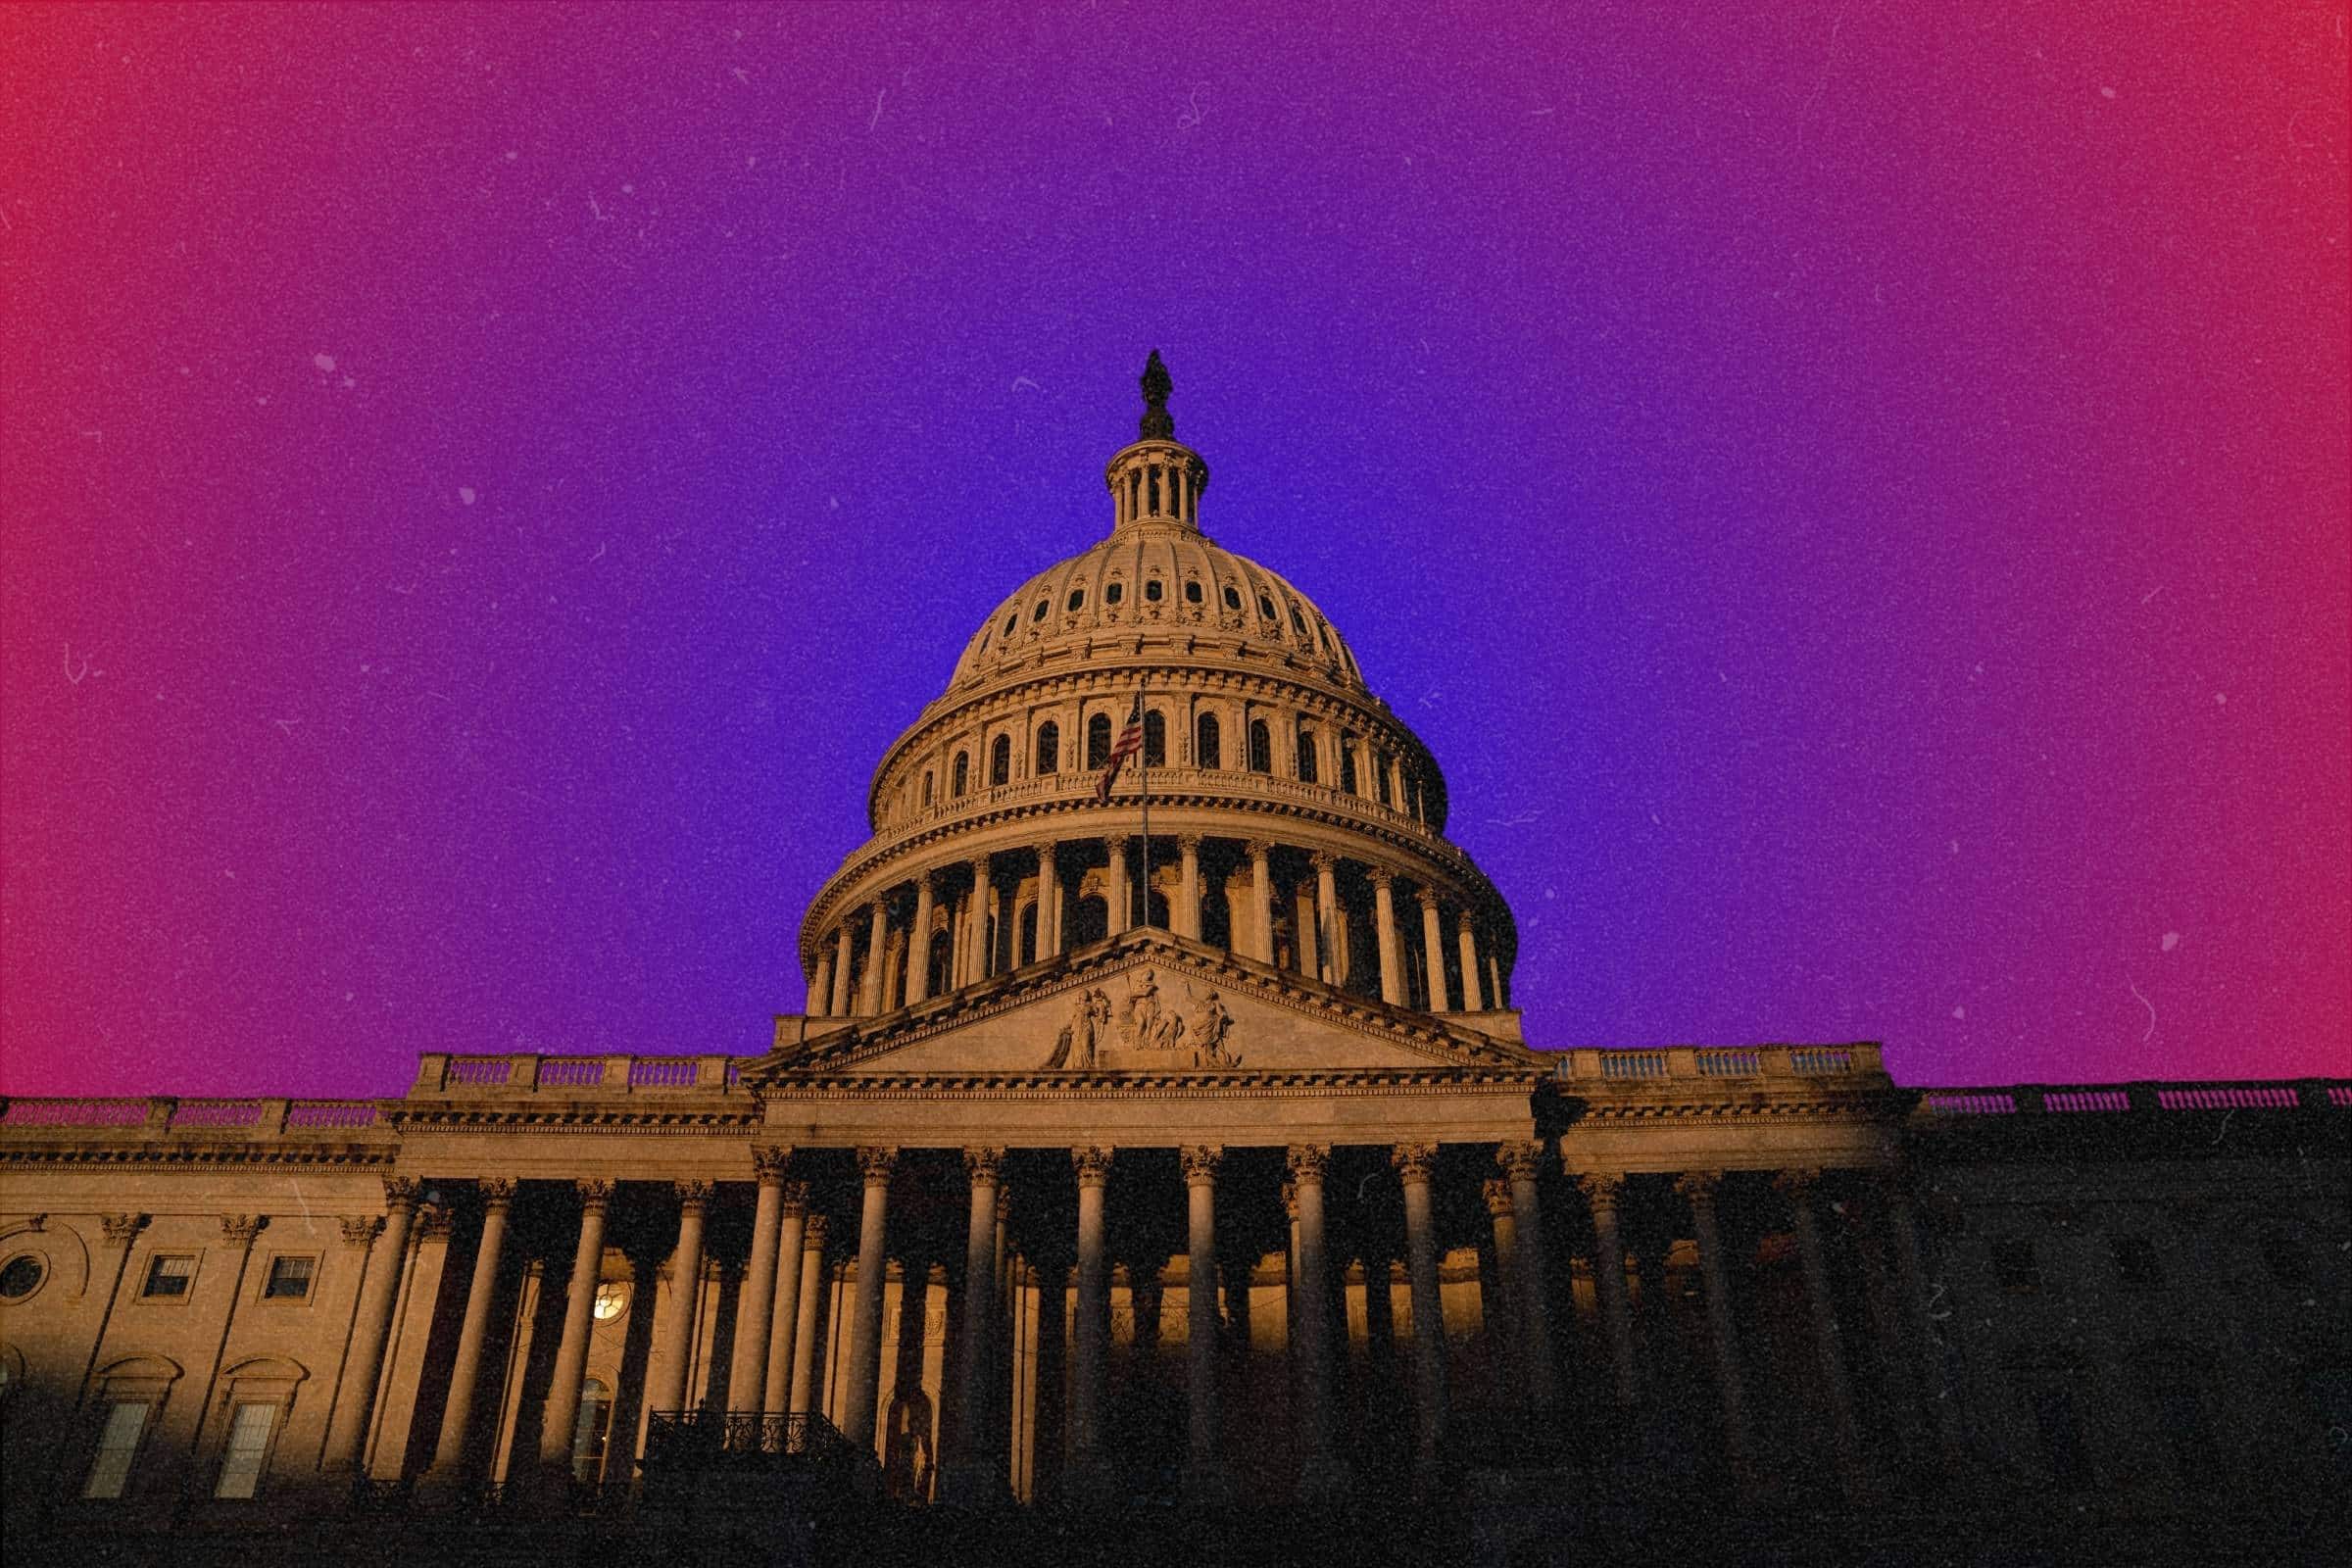 Μια φωτογραφία-απεικόνιση του κτιρίου του Καπιτωλίου των ΗΠΑ σε φόντο κλίσης με το μπλε να καταλαμβάνει το κόκκινο